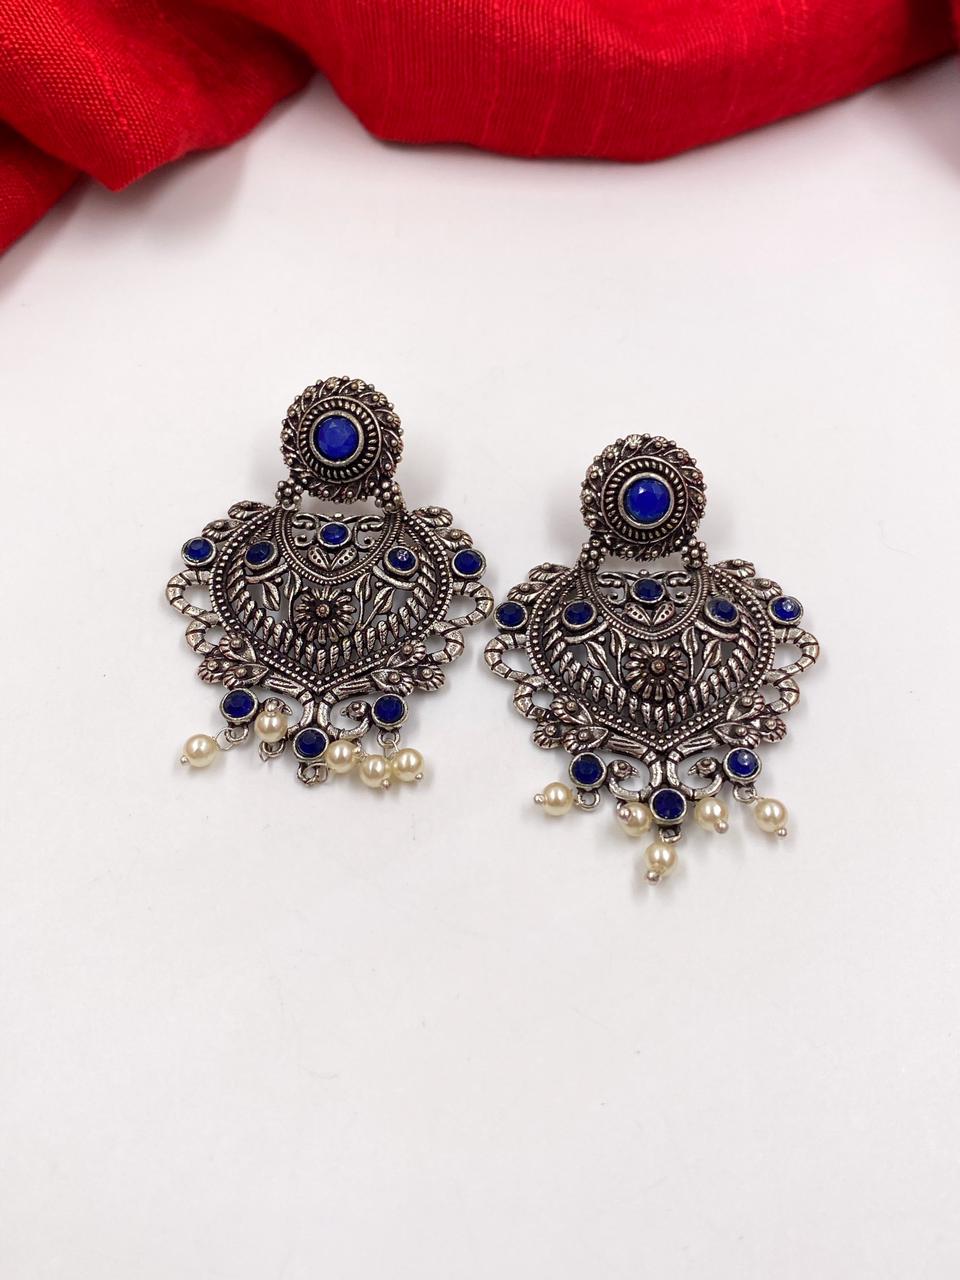 Buy Pearl earrings, 10mm Pearl stud earrings, Silver pearl ear studs online  at aStudio1980.com